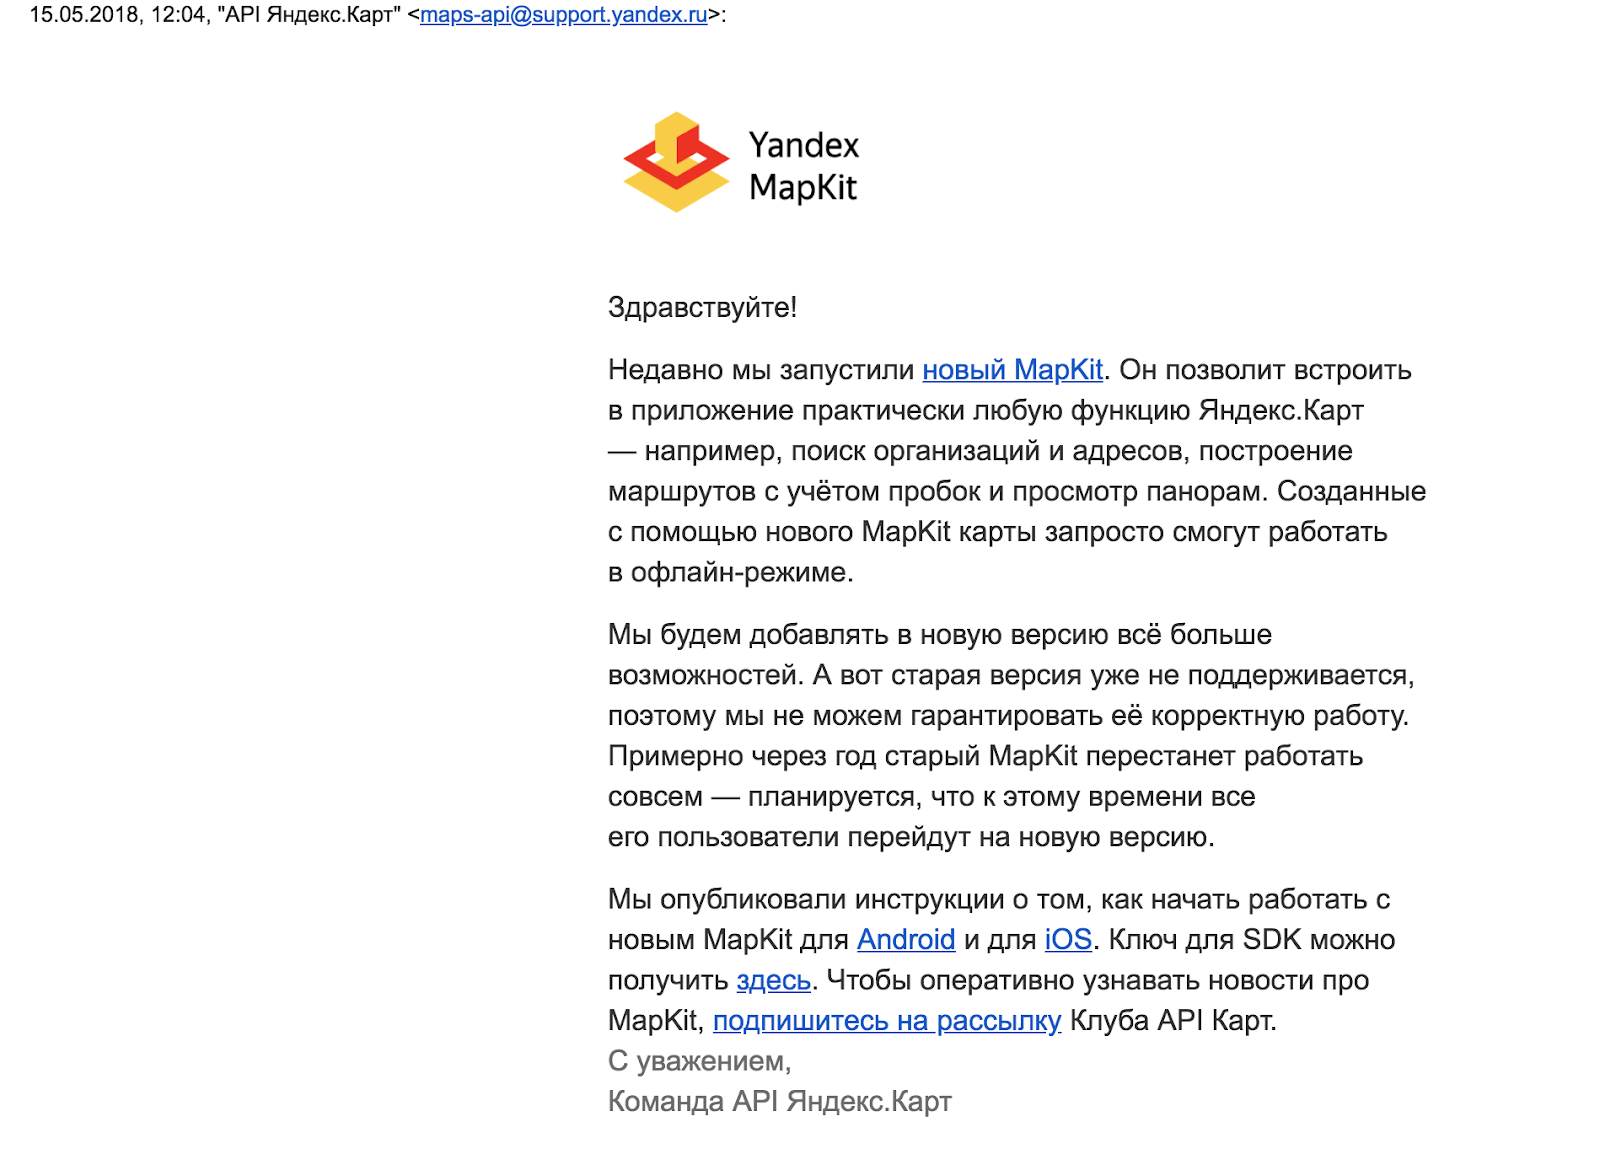 Сказ о том как я Yandex MapKit на iOS обновлял или карты, деньги, 2 мапкита - 2